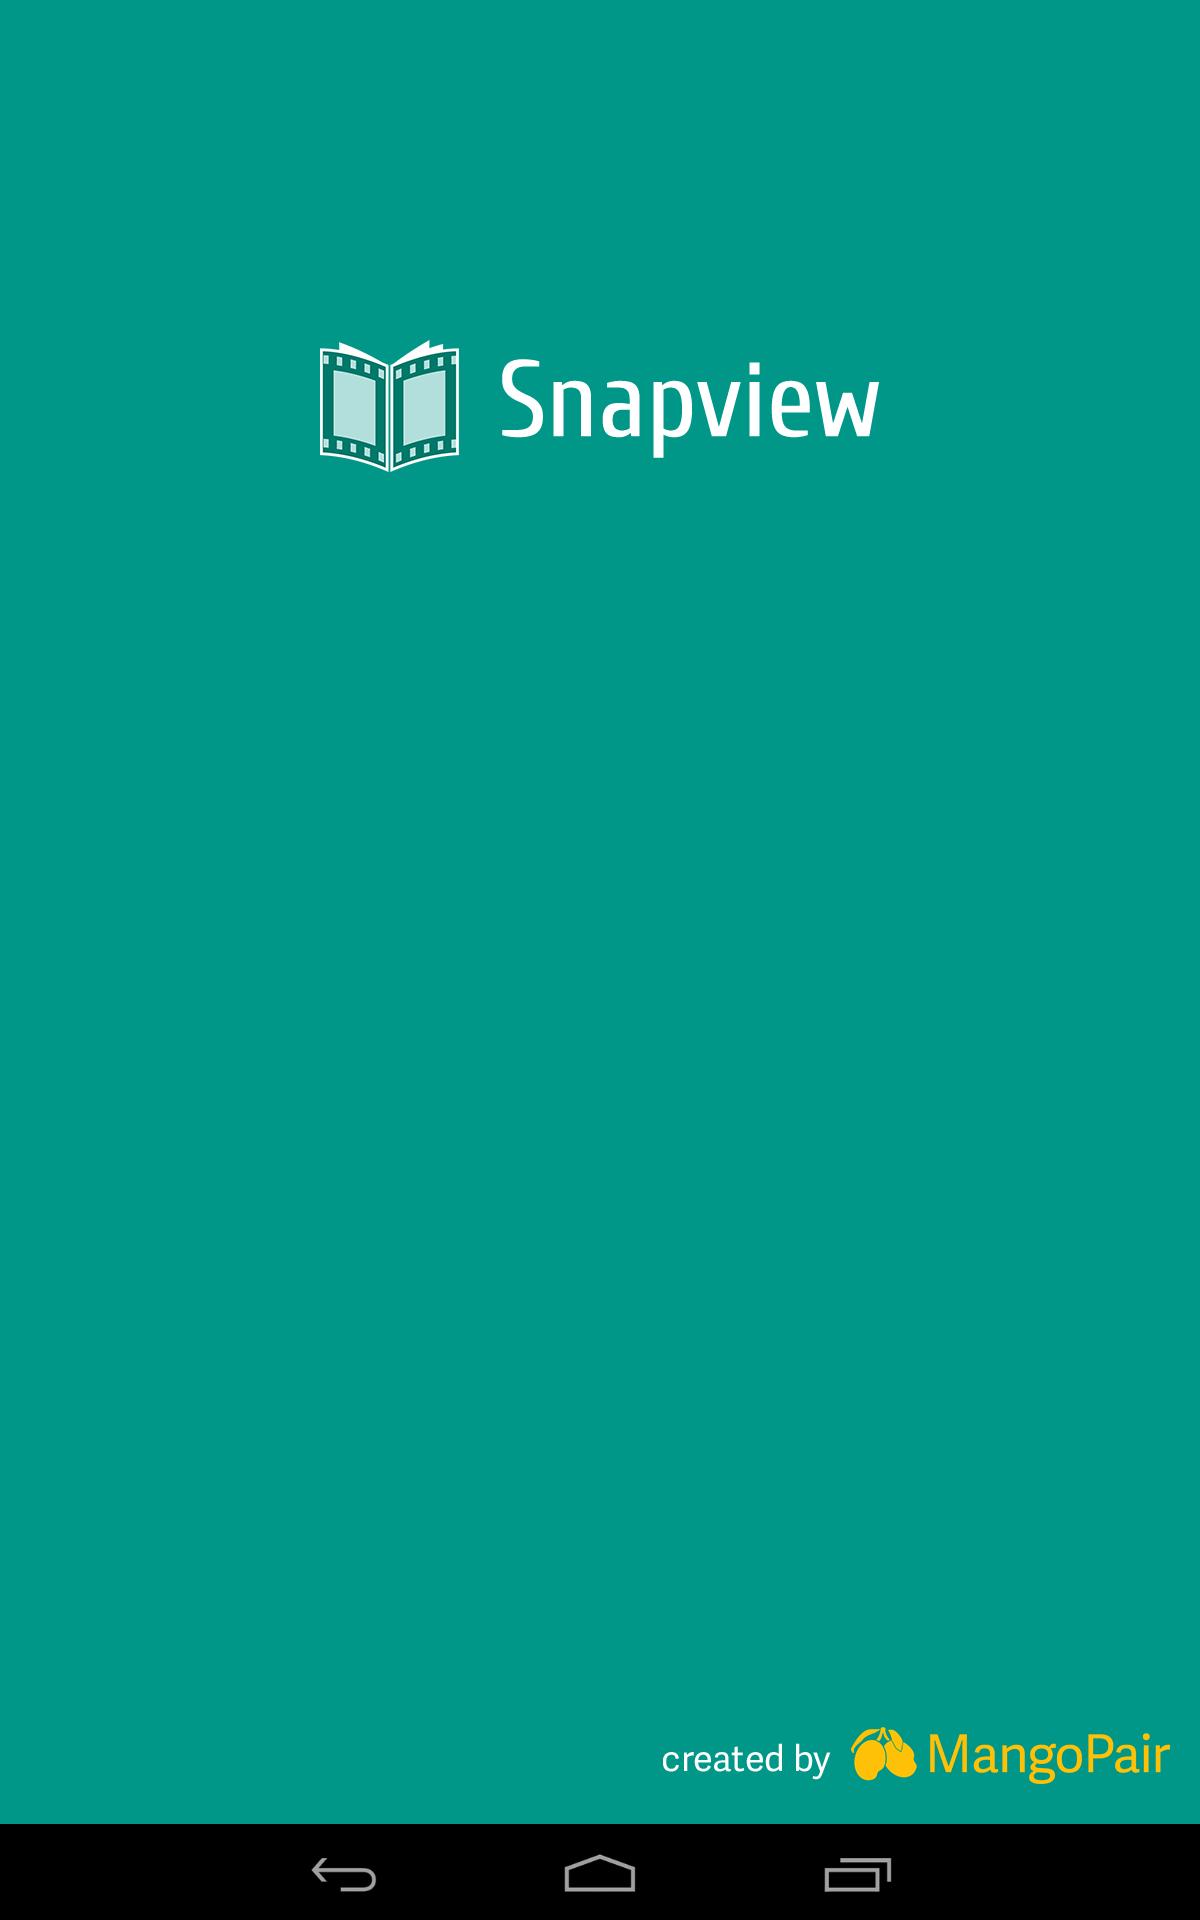 Hãy tải ngay ảnh nền Snapview cho thiết bị Android của bạn để cập nhật cho nó một diện mạo mới đầy màu sắc và năng động. Với hàng trăm lựa chọn đa dạng, bạn sẽ luôn tìm được một bức ảnh nền phù hợp với mỗi thời điểm, hoàn cảnh và sở thích của mình.